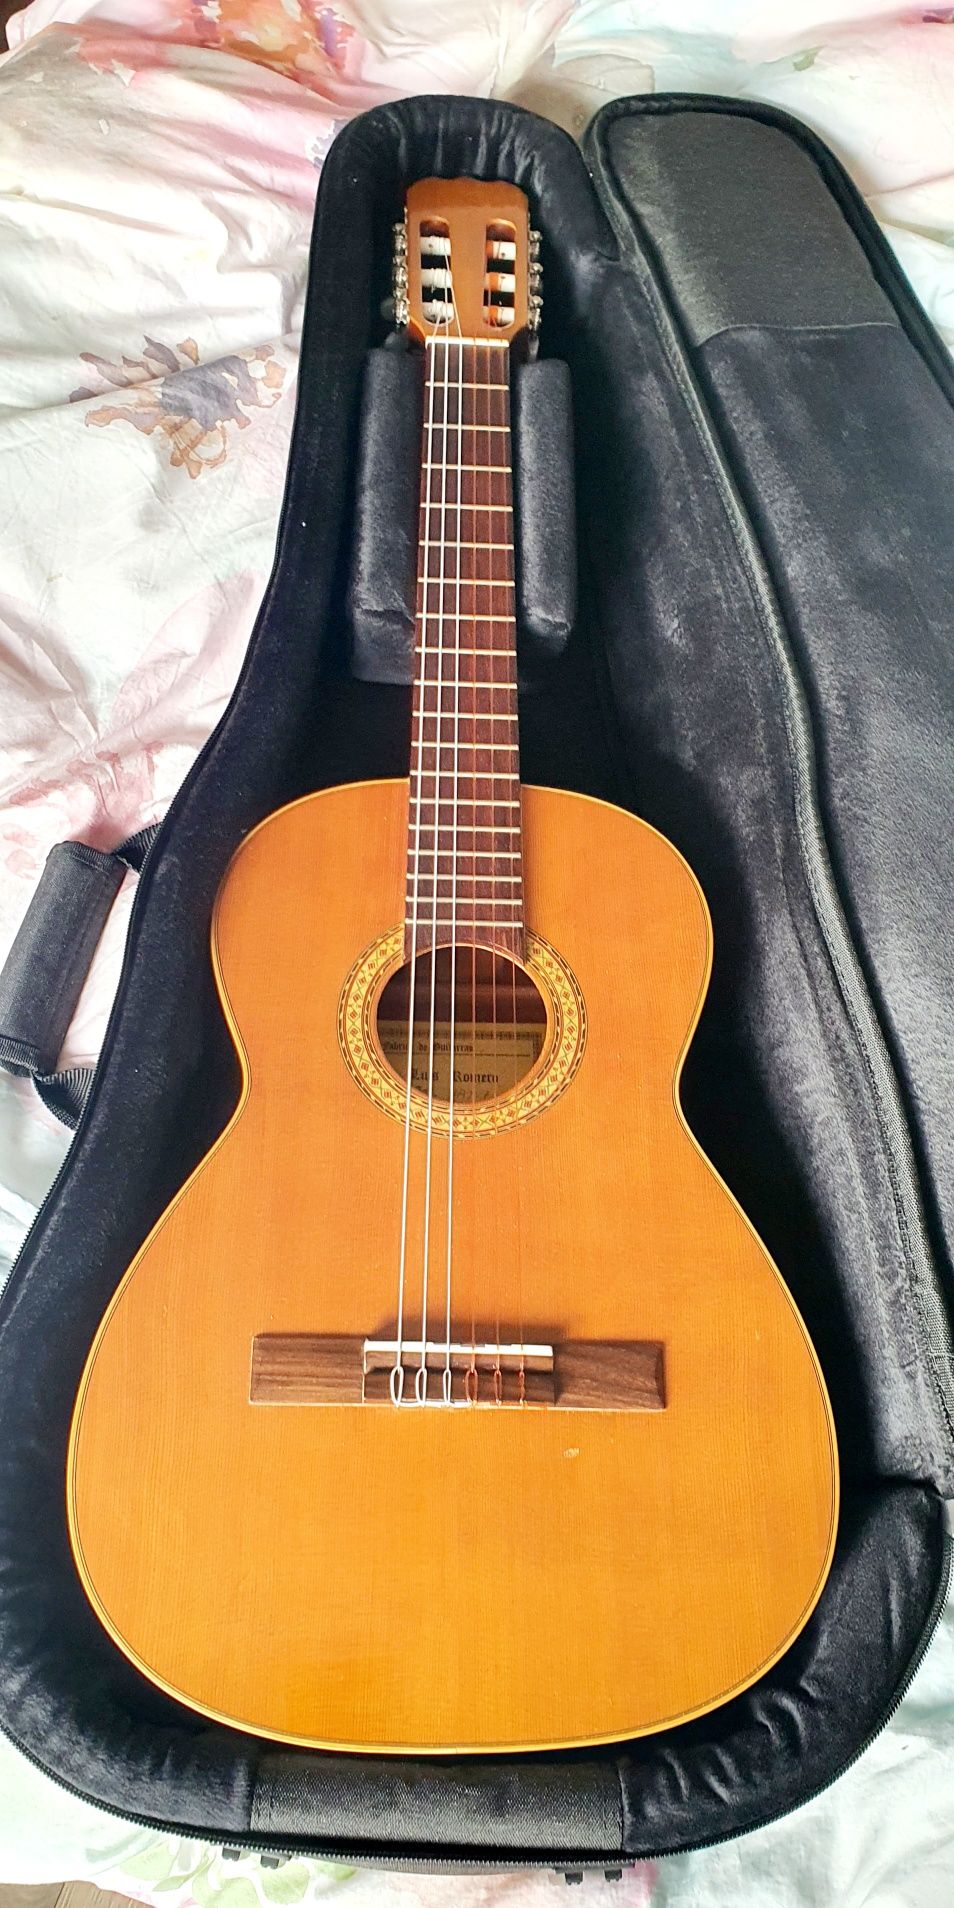 Испанская классическая фламенко гитара, Luis Romero. Parlor size